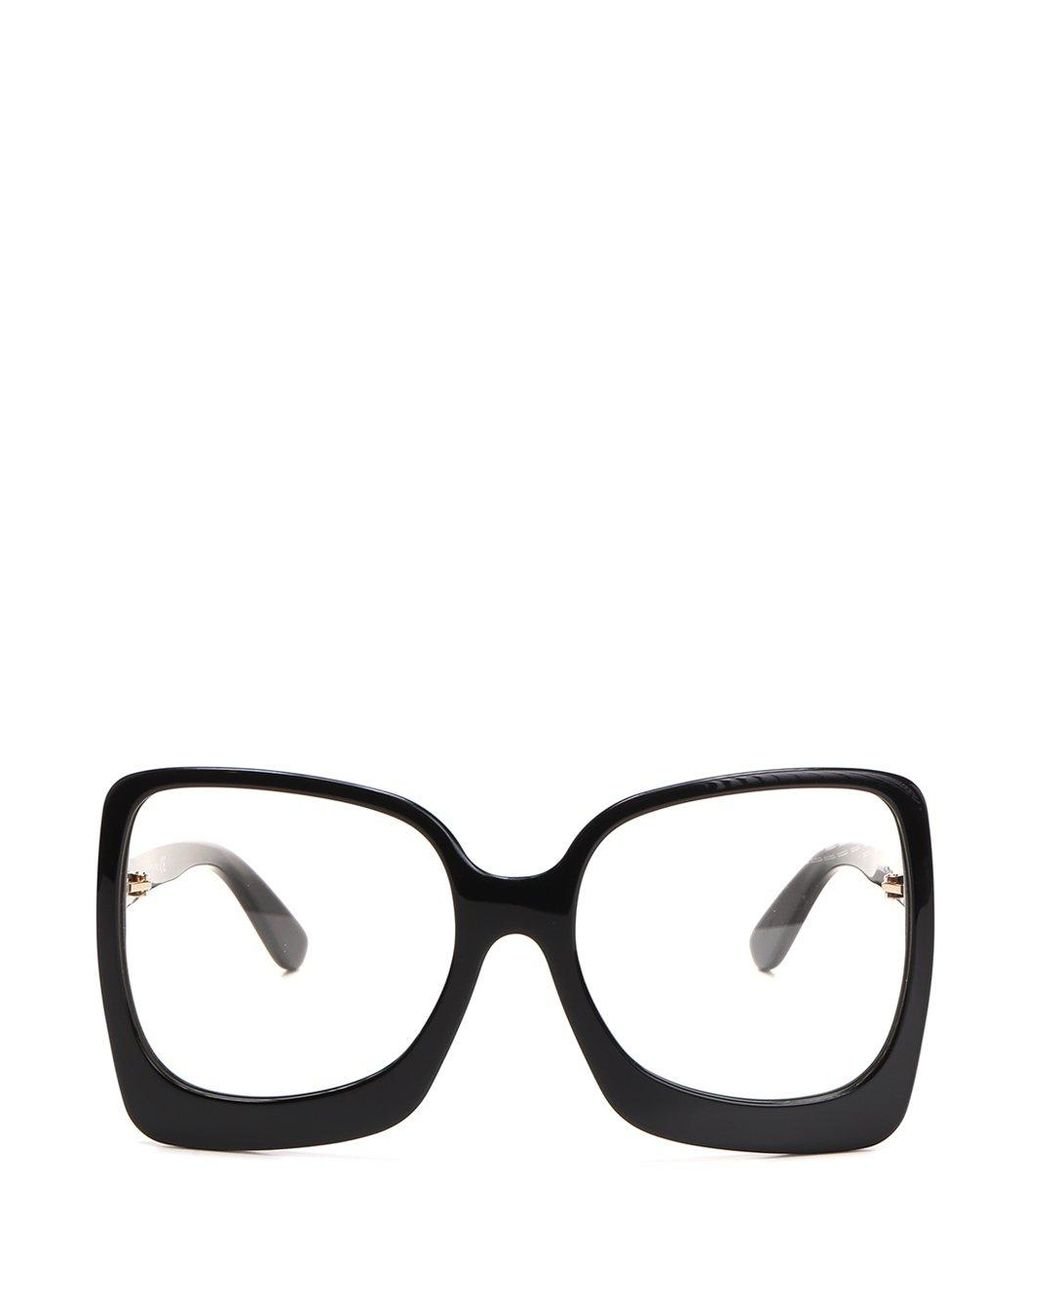 Tom Ford Emmanuella Optical Frames in Black | Lyst